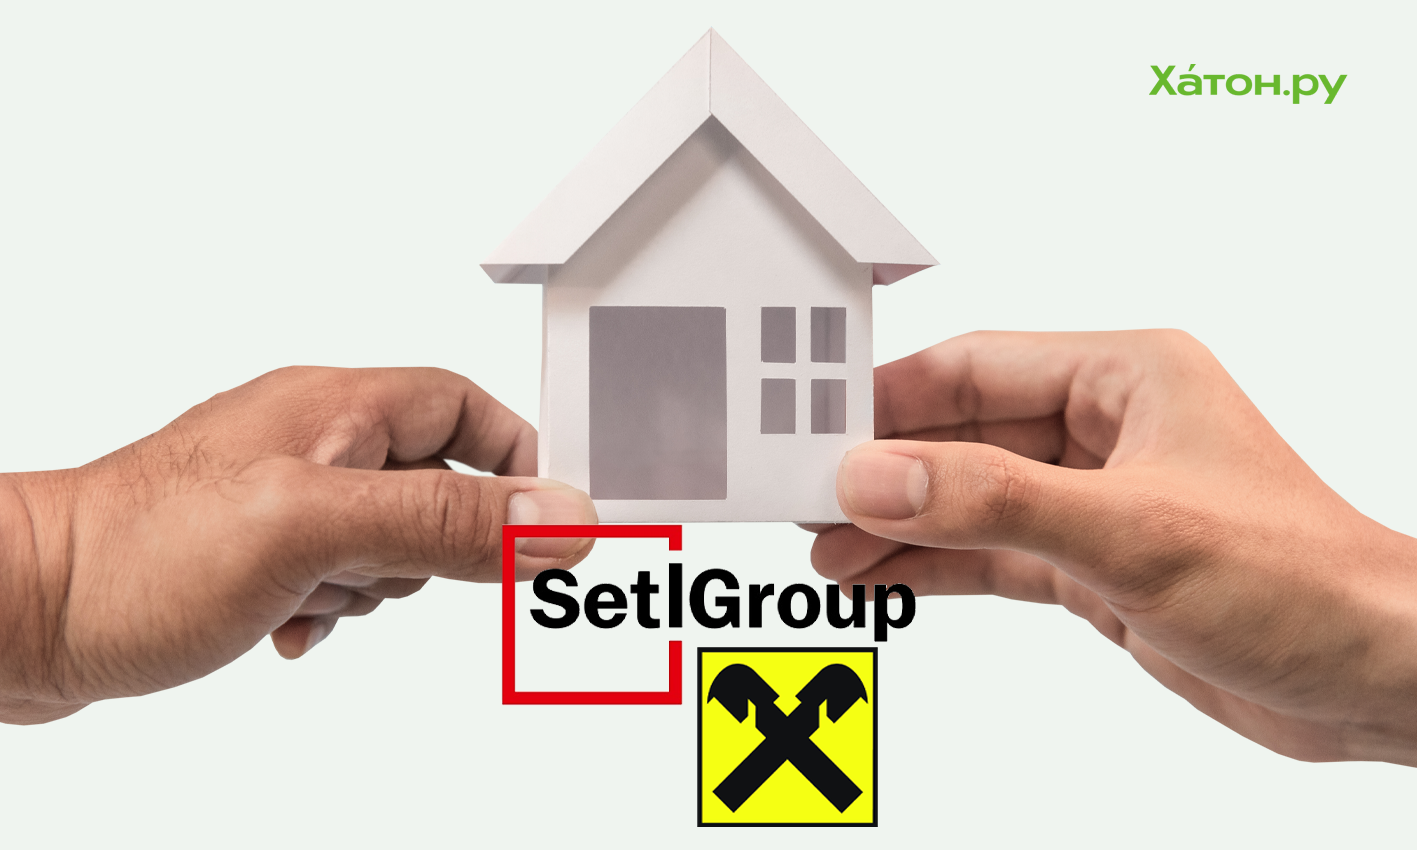 Райффайзенбанк и Setl Group запустили совместную ипотечную программу